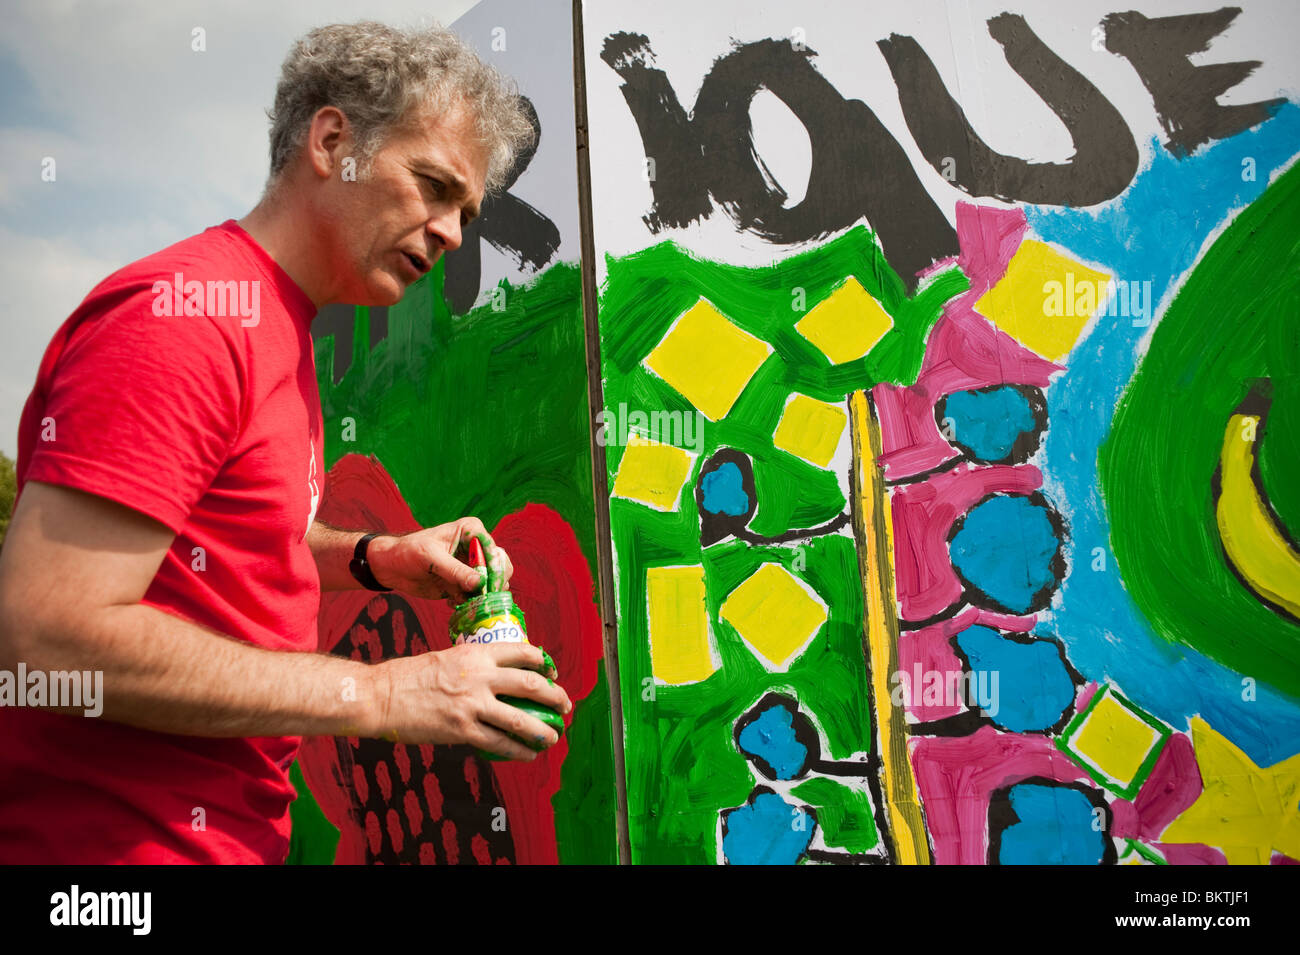 Célébration de la Journée mondiale du commerce équitable, avec un homme peignant une fresque murale dans le parc de la Villette, Art Banque D'Images